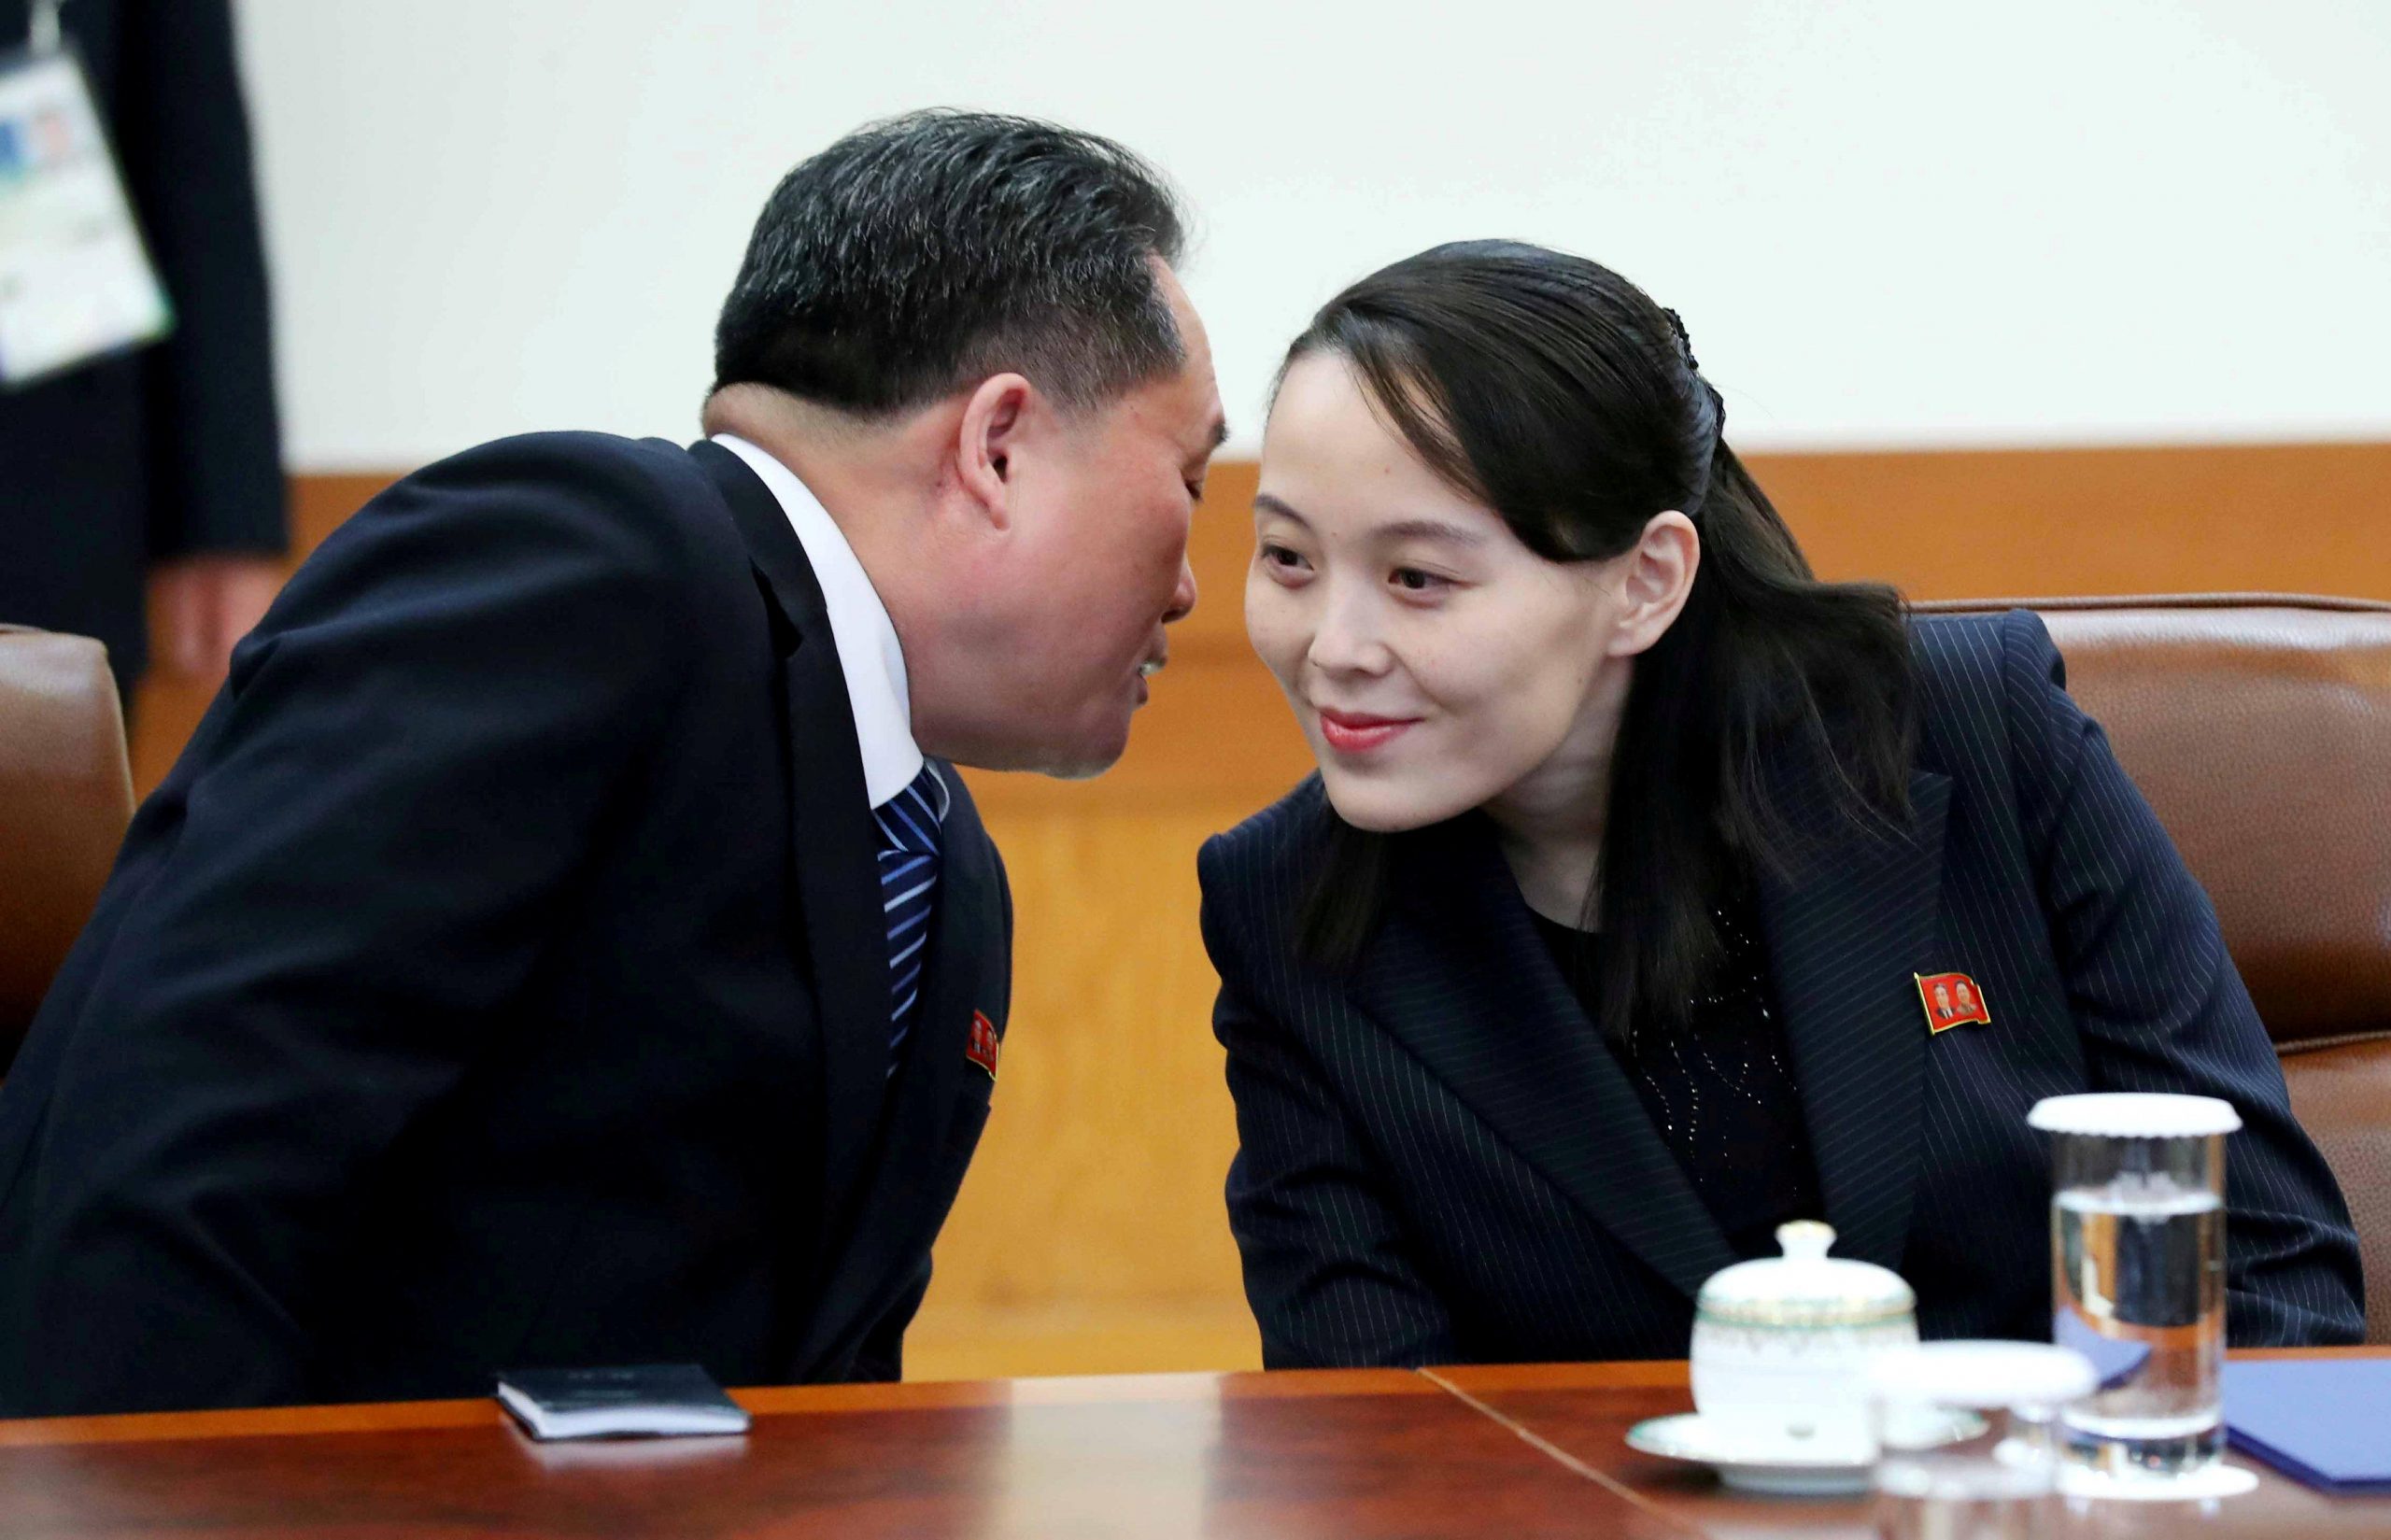 La misteriosa sorella di Kim verso leadership? Esperti divisi